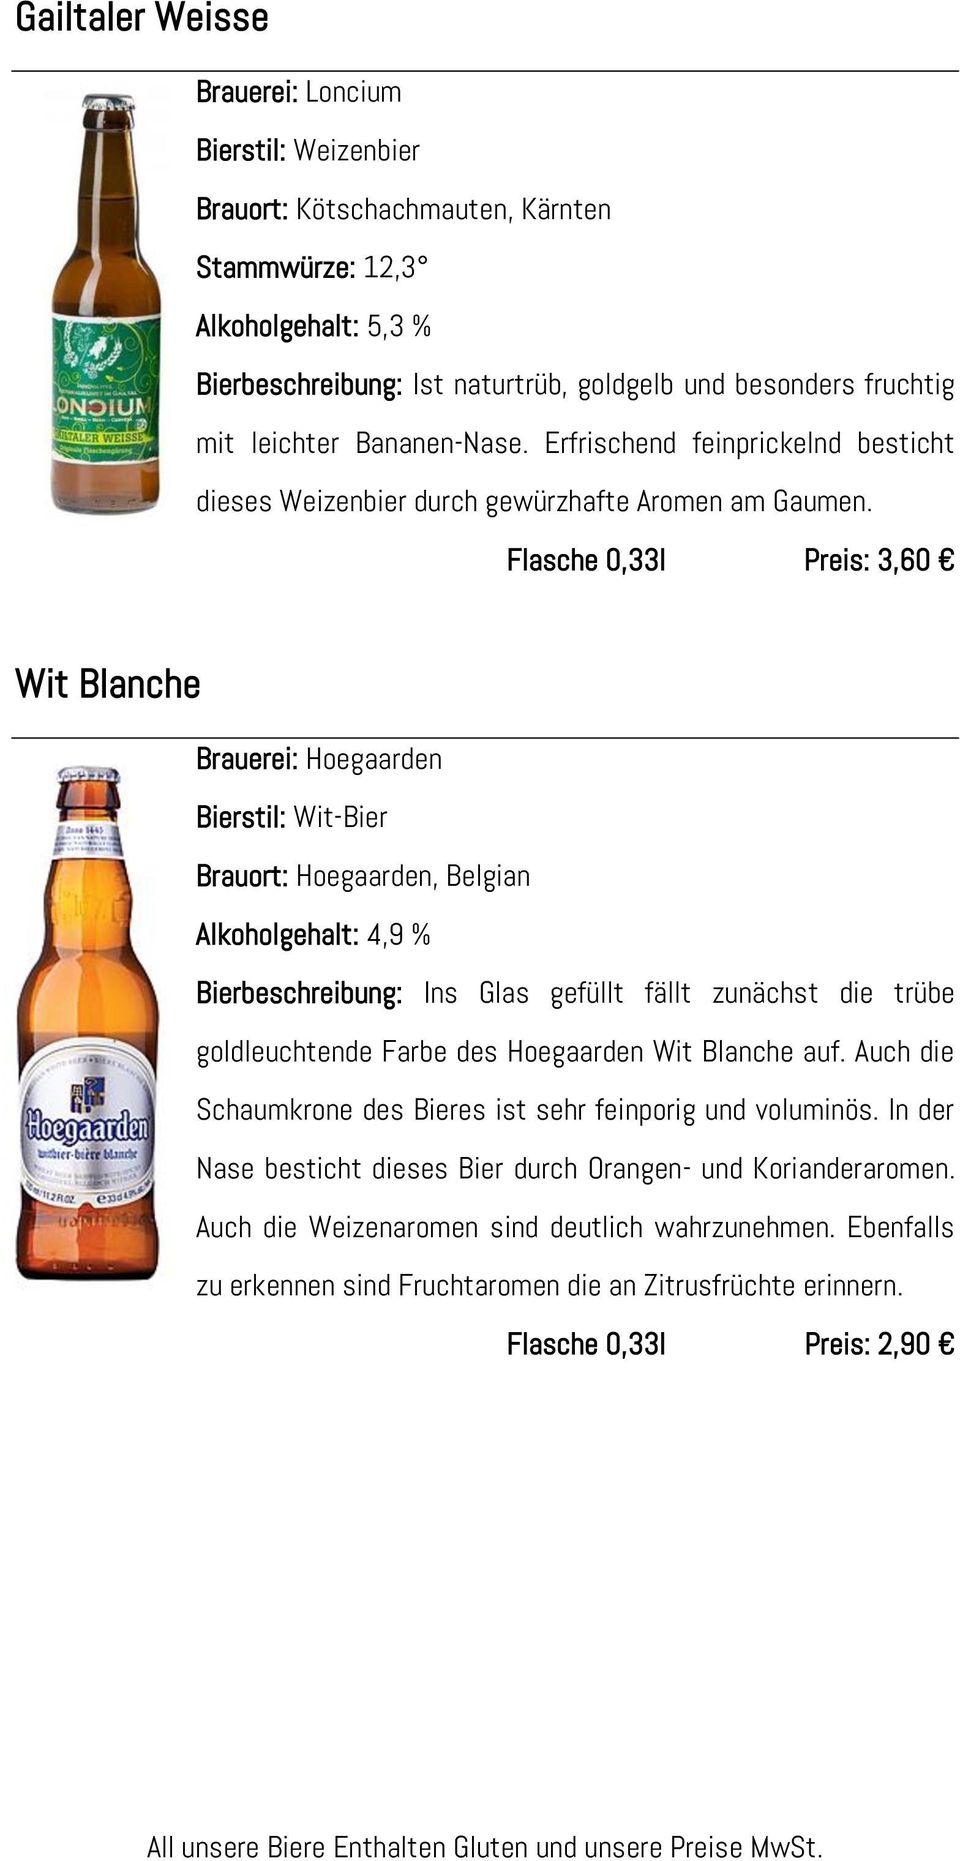 Flasche 0,33l Preis: 3,60 Wit Blanche Brauerei: Hoegaarden Bierstil: Wit-Bier Brauort: Hoegaarden, Belgian Alkoholgehalt: 4,9 % Bierbeschreibung: Ins Glas gefüllt fällt zunächst die trübe